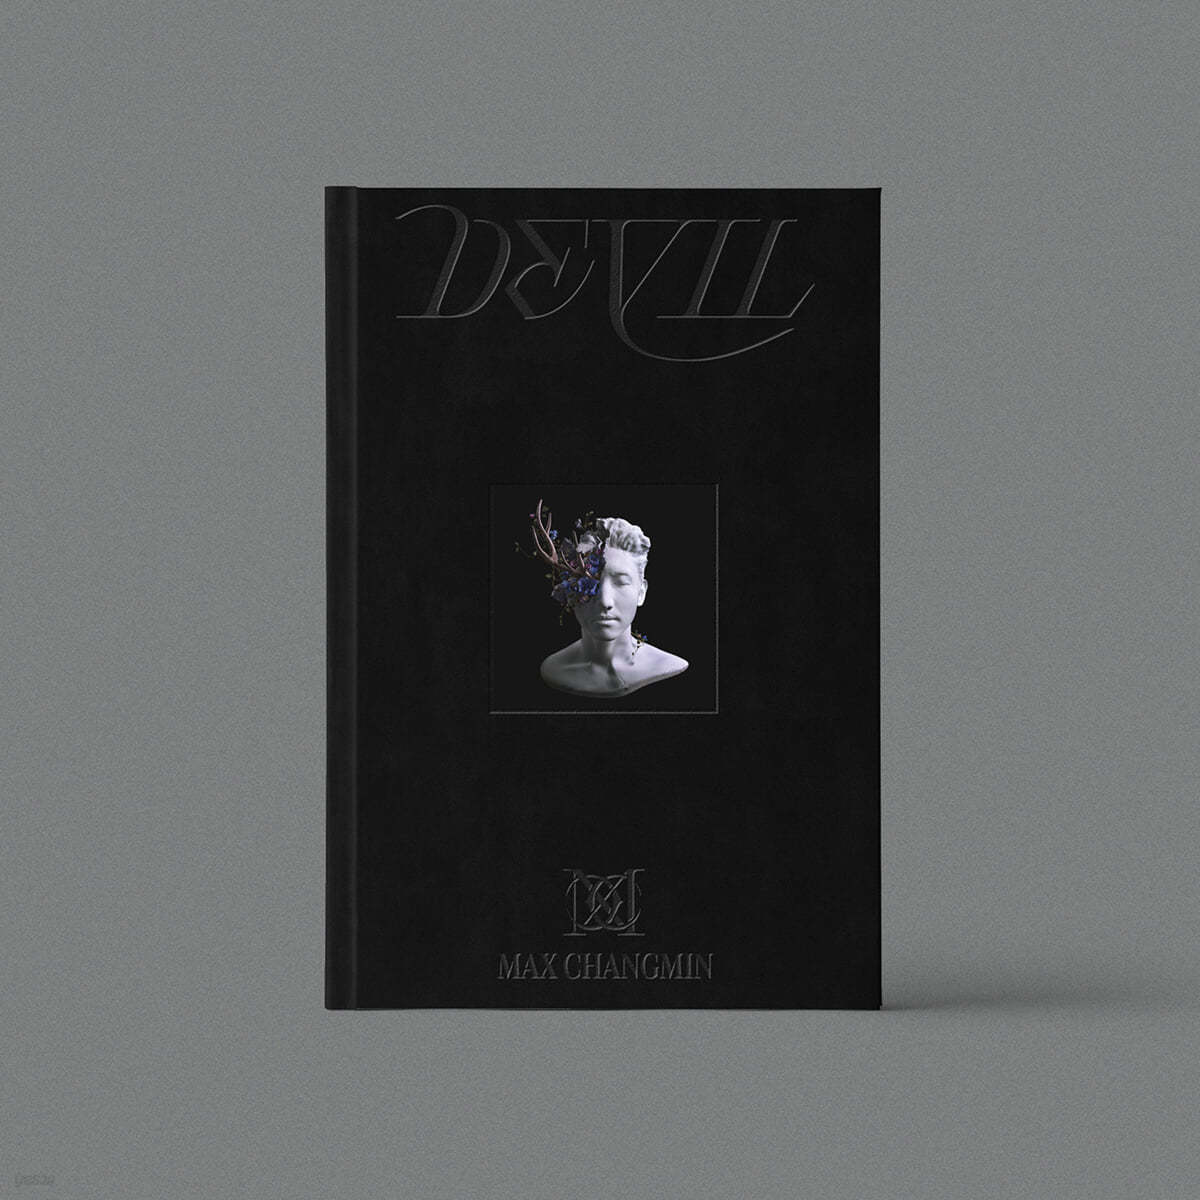 최강창민 - 미니앨범 2집 : Devil [Black ver.]